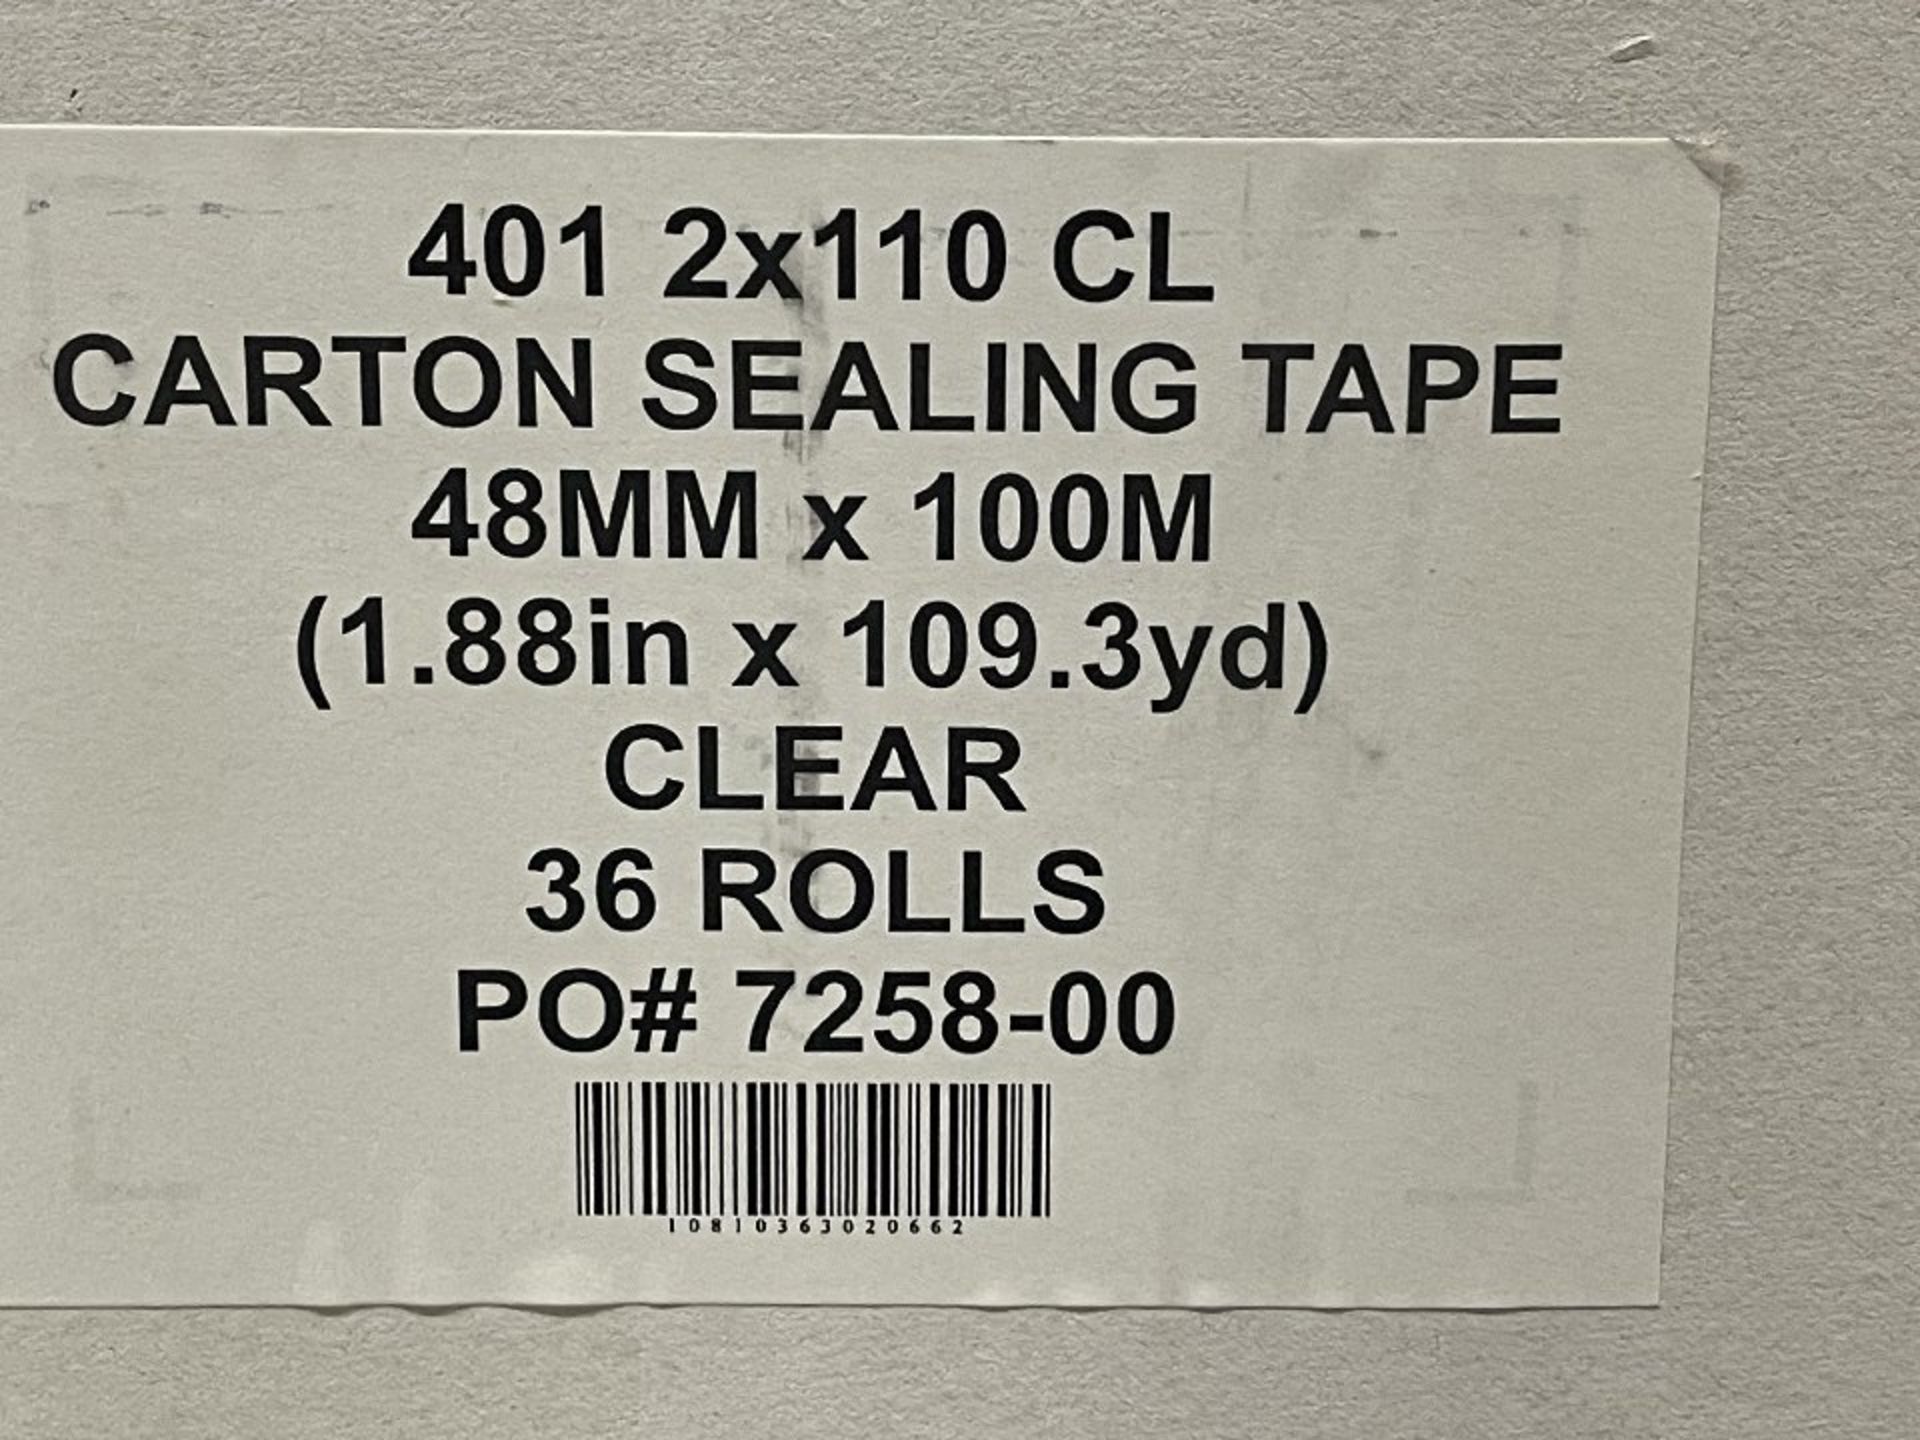 Carton Sealing Tape Pallet - Image 2 of 2